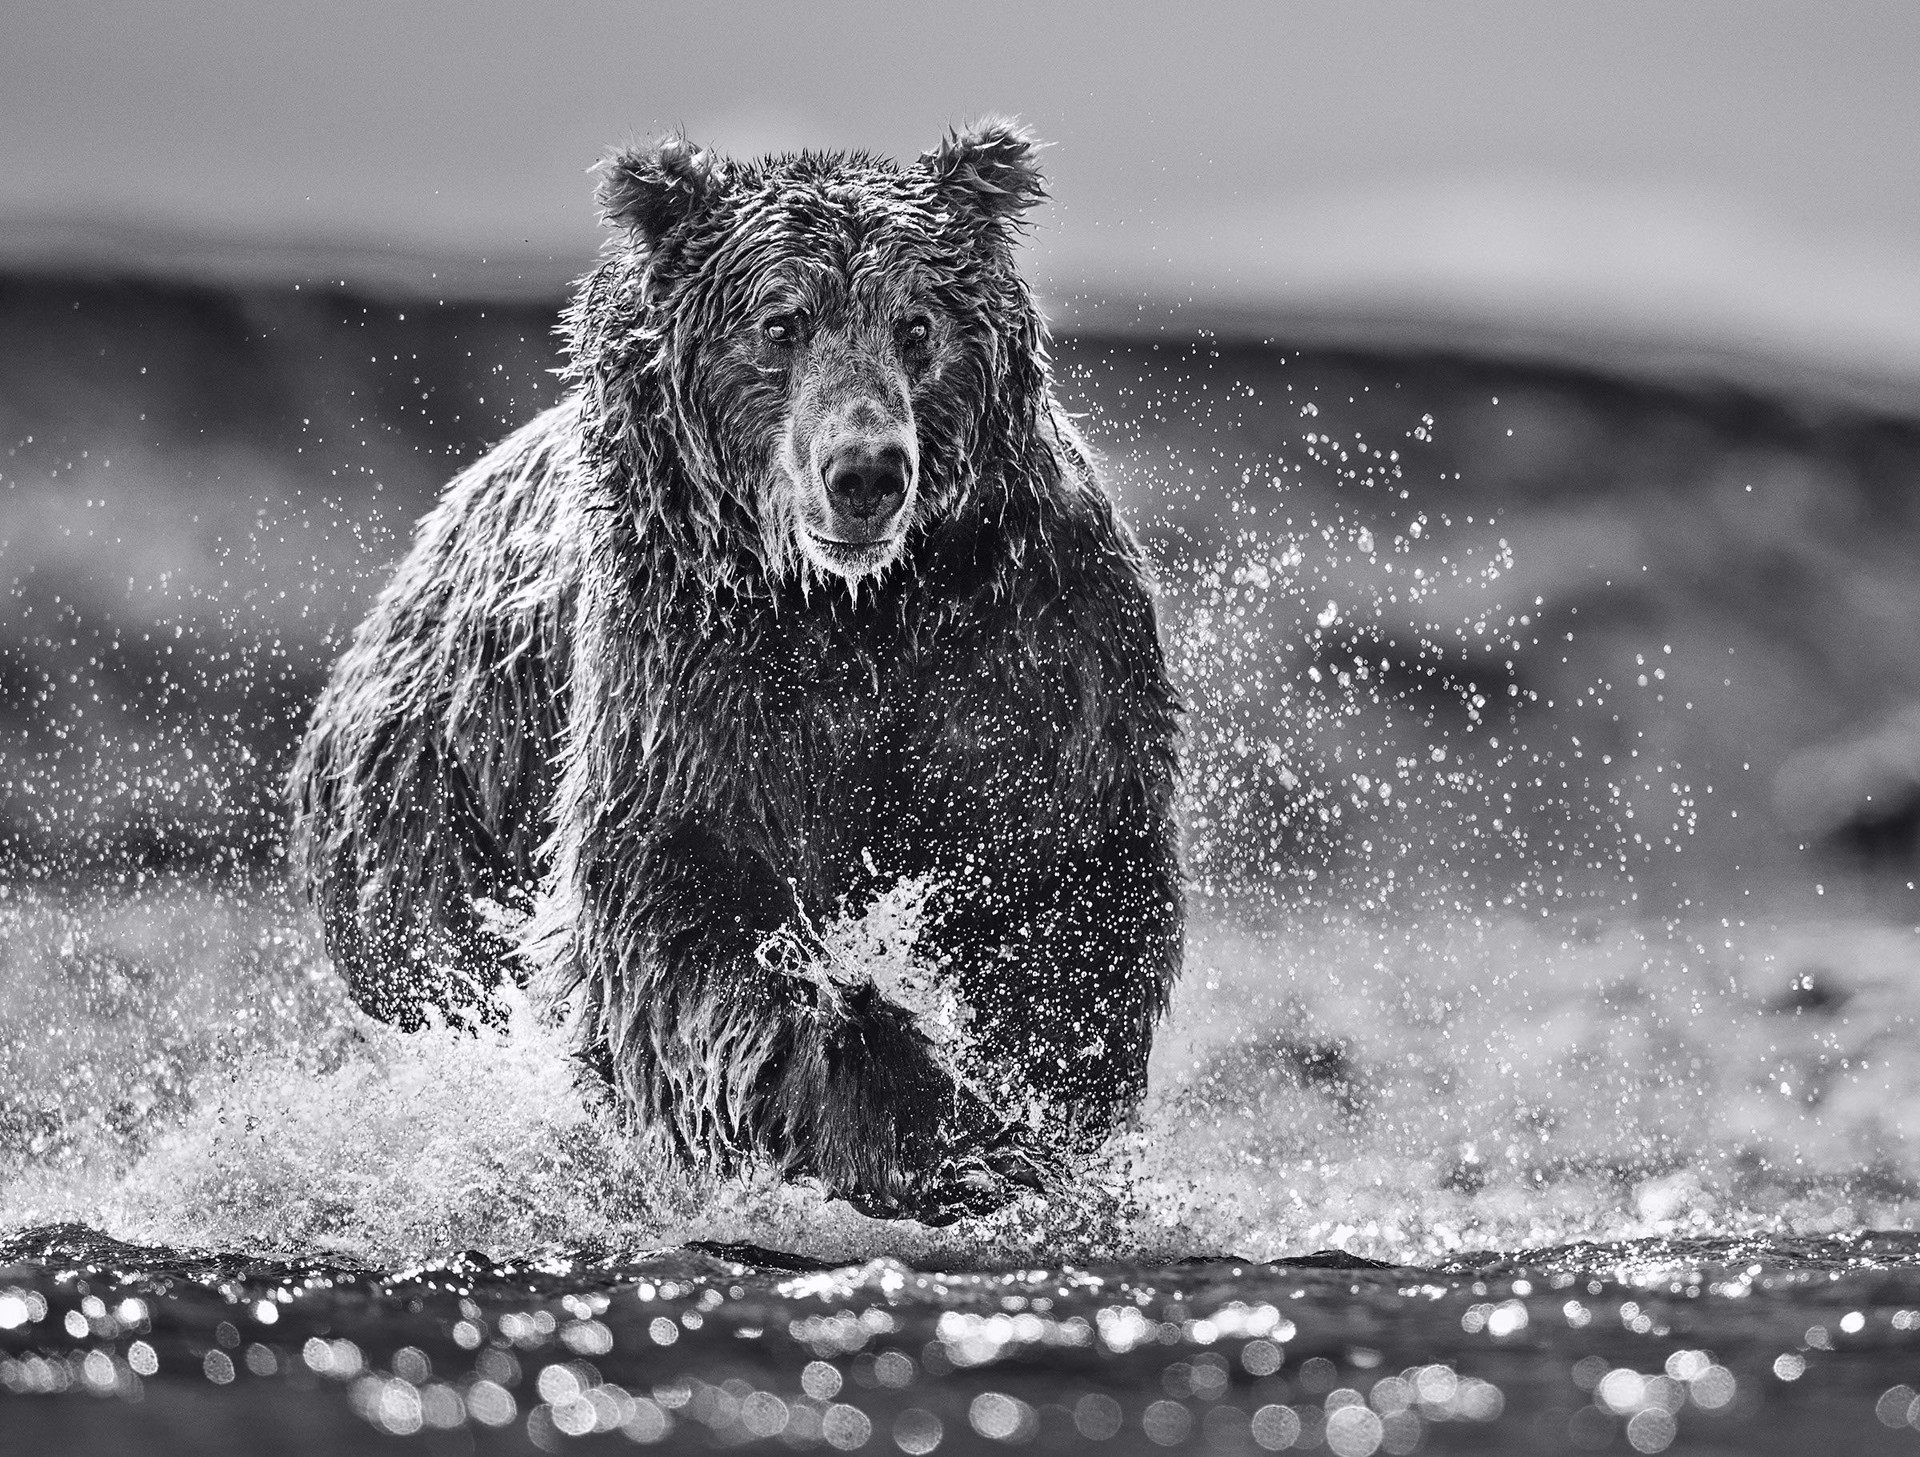 The Happy Bear by David Yarrow